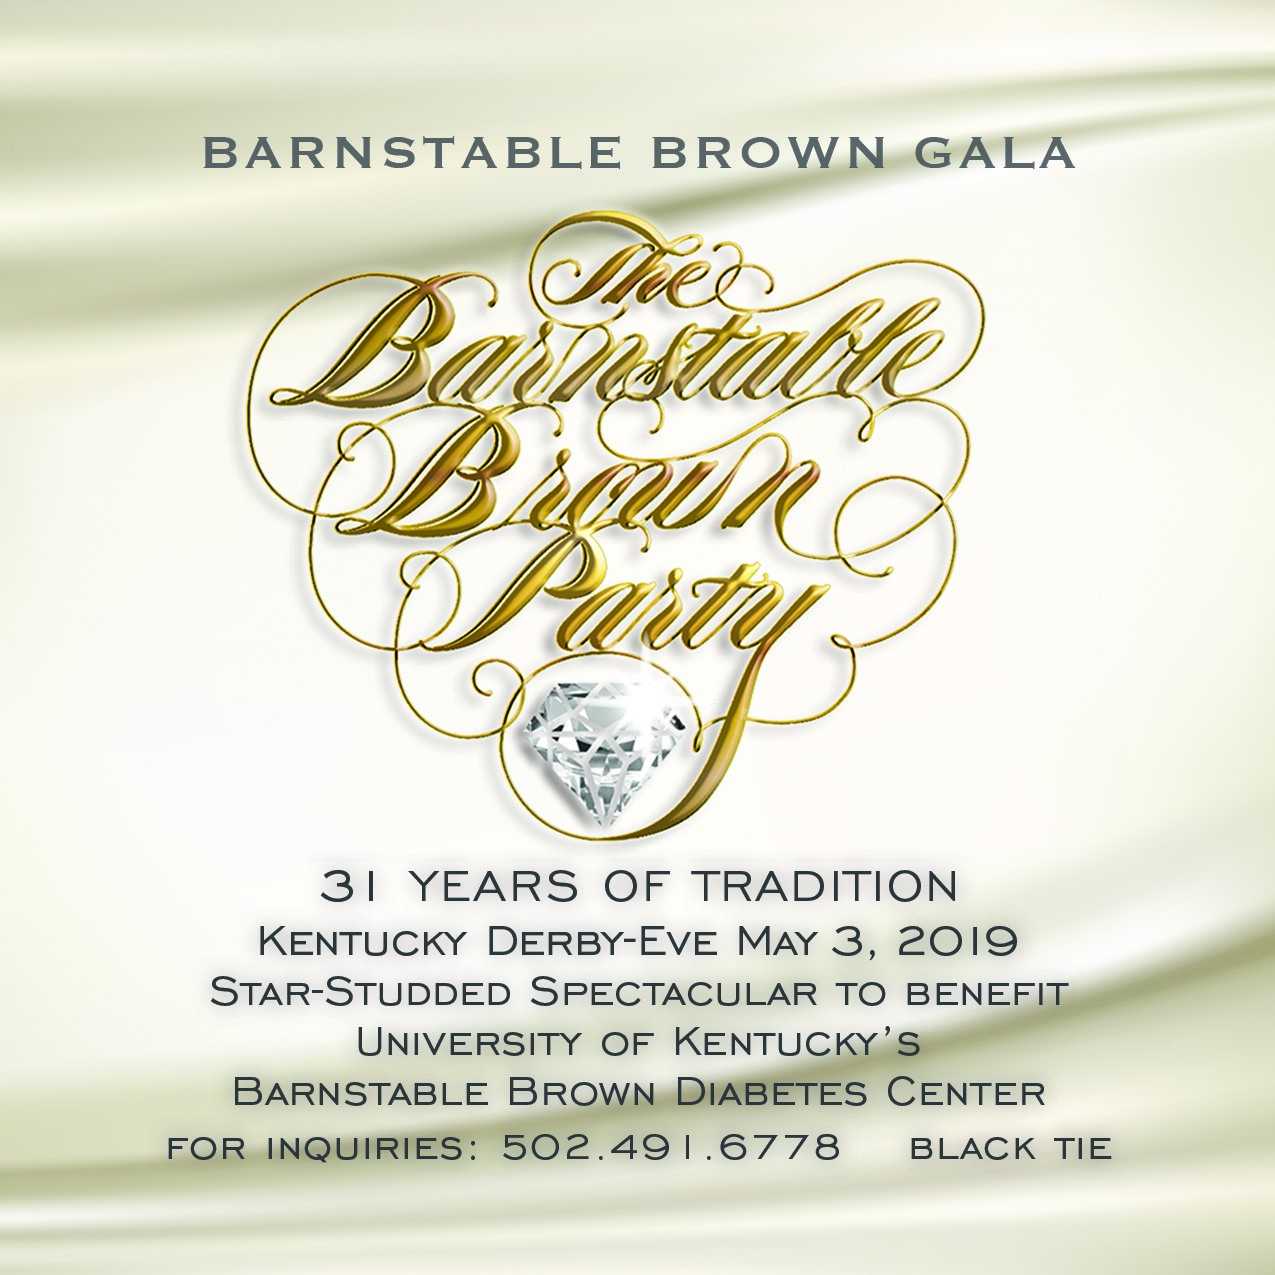 Barnstable Brown Gala